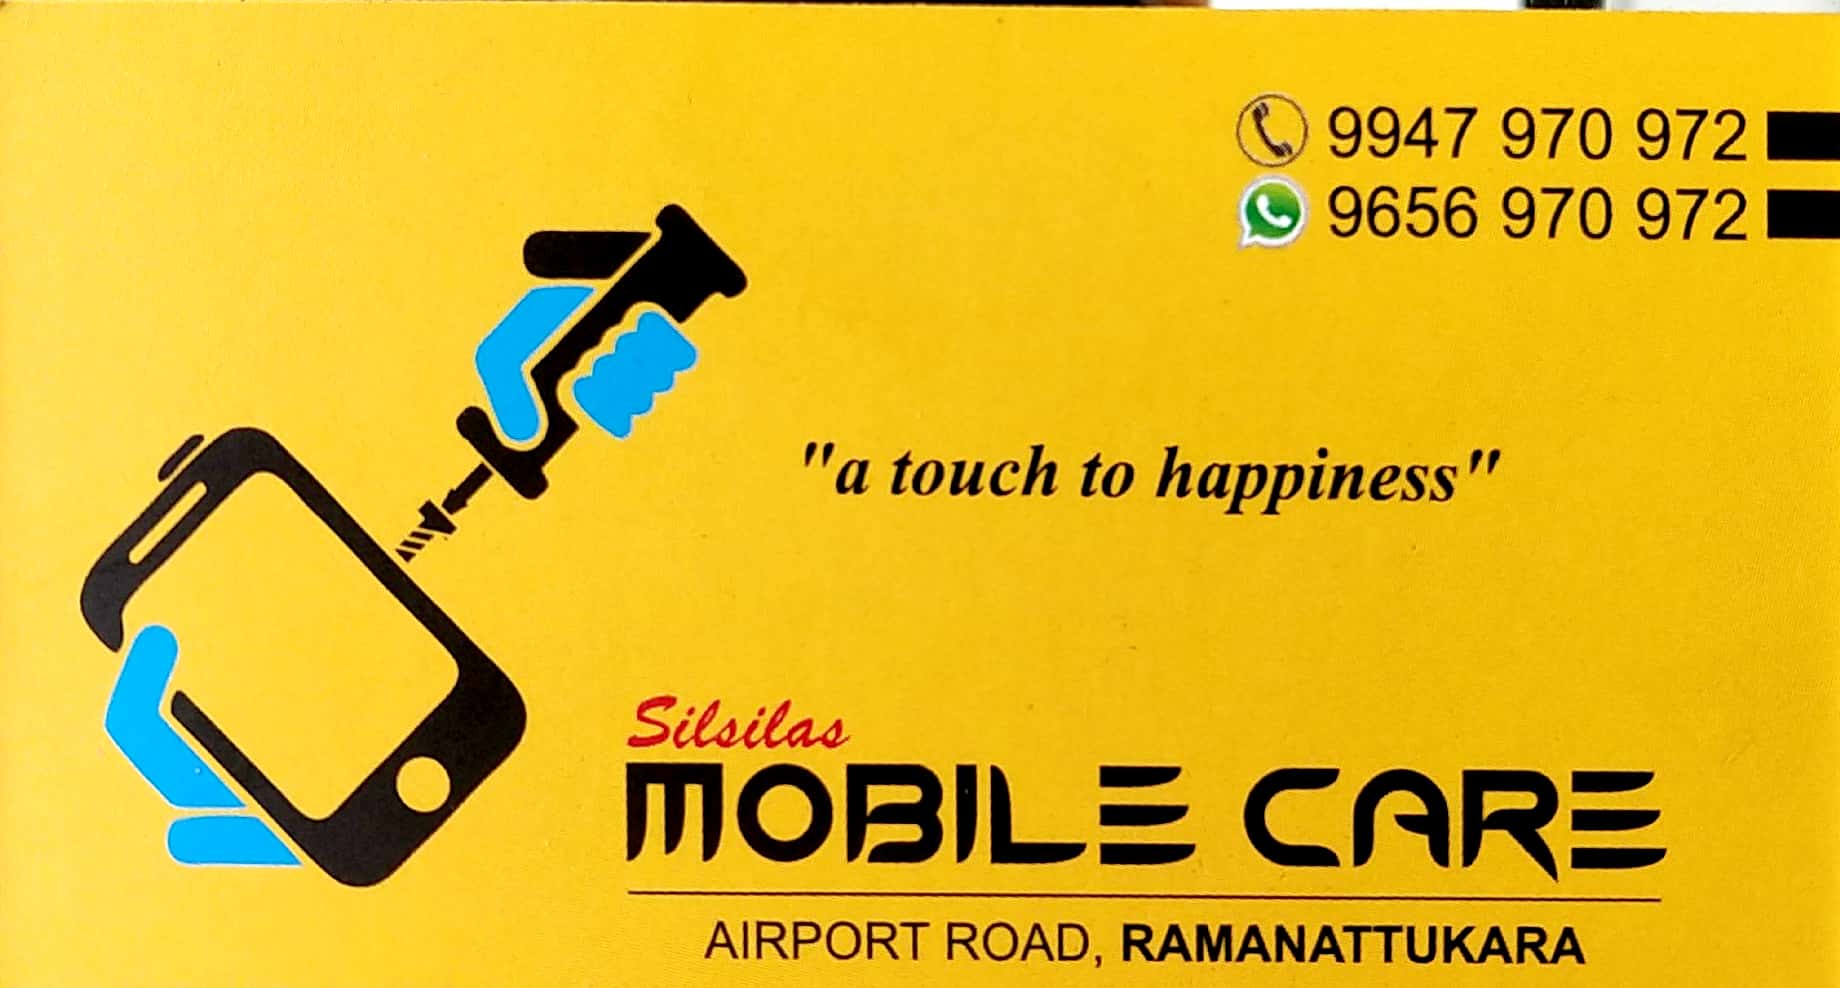 MOBILE CARE, MOBILE SHOP,  service in Ramanattukara, Kozhikode